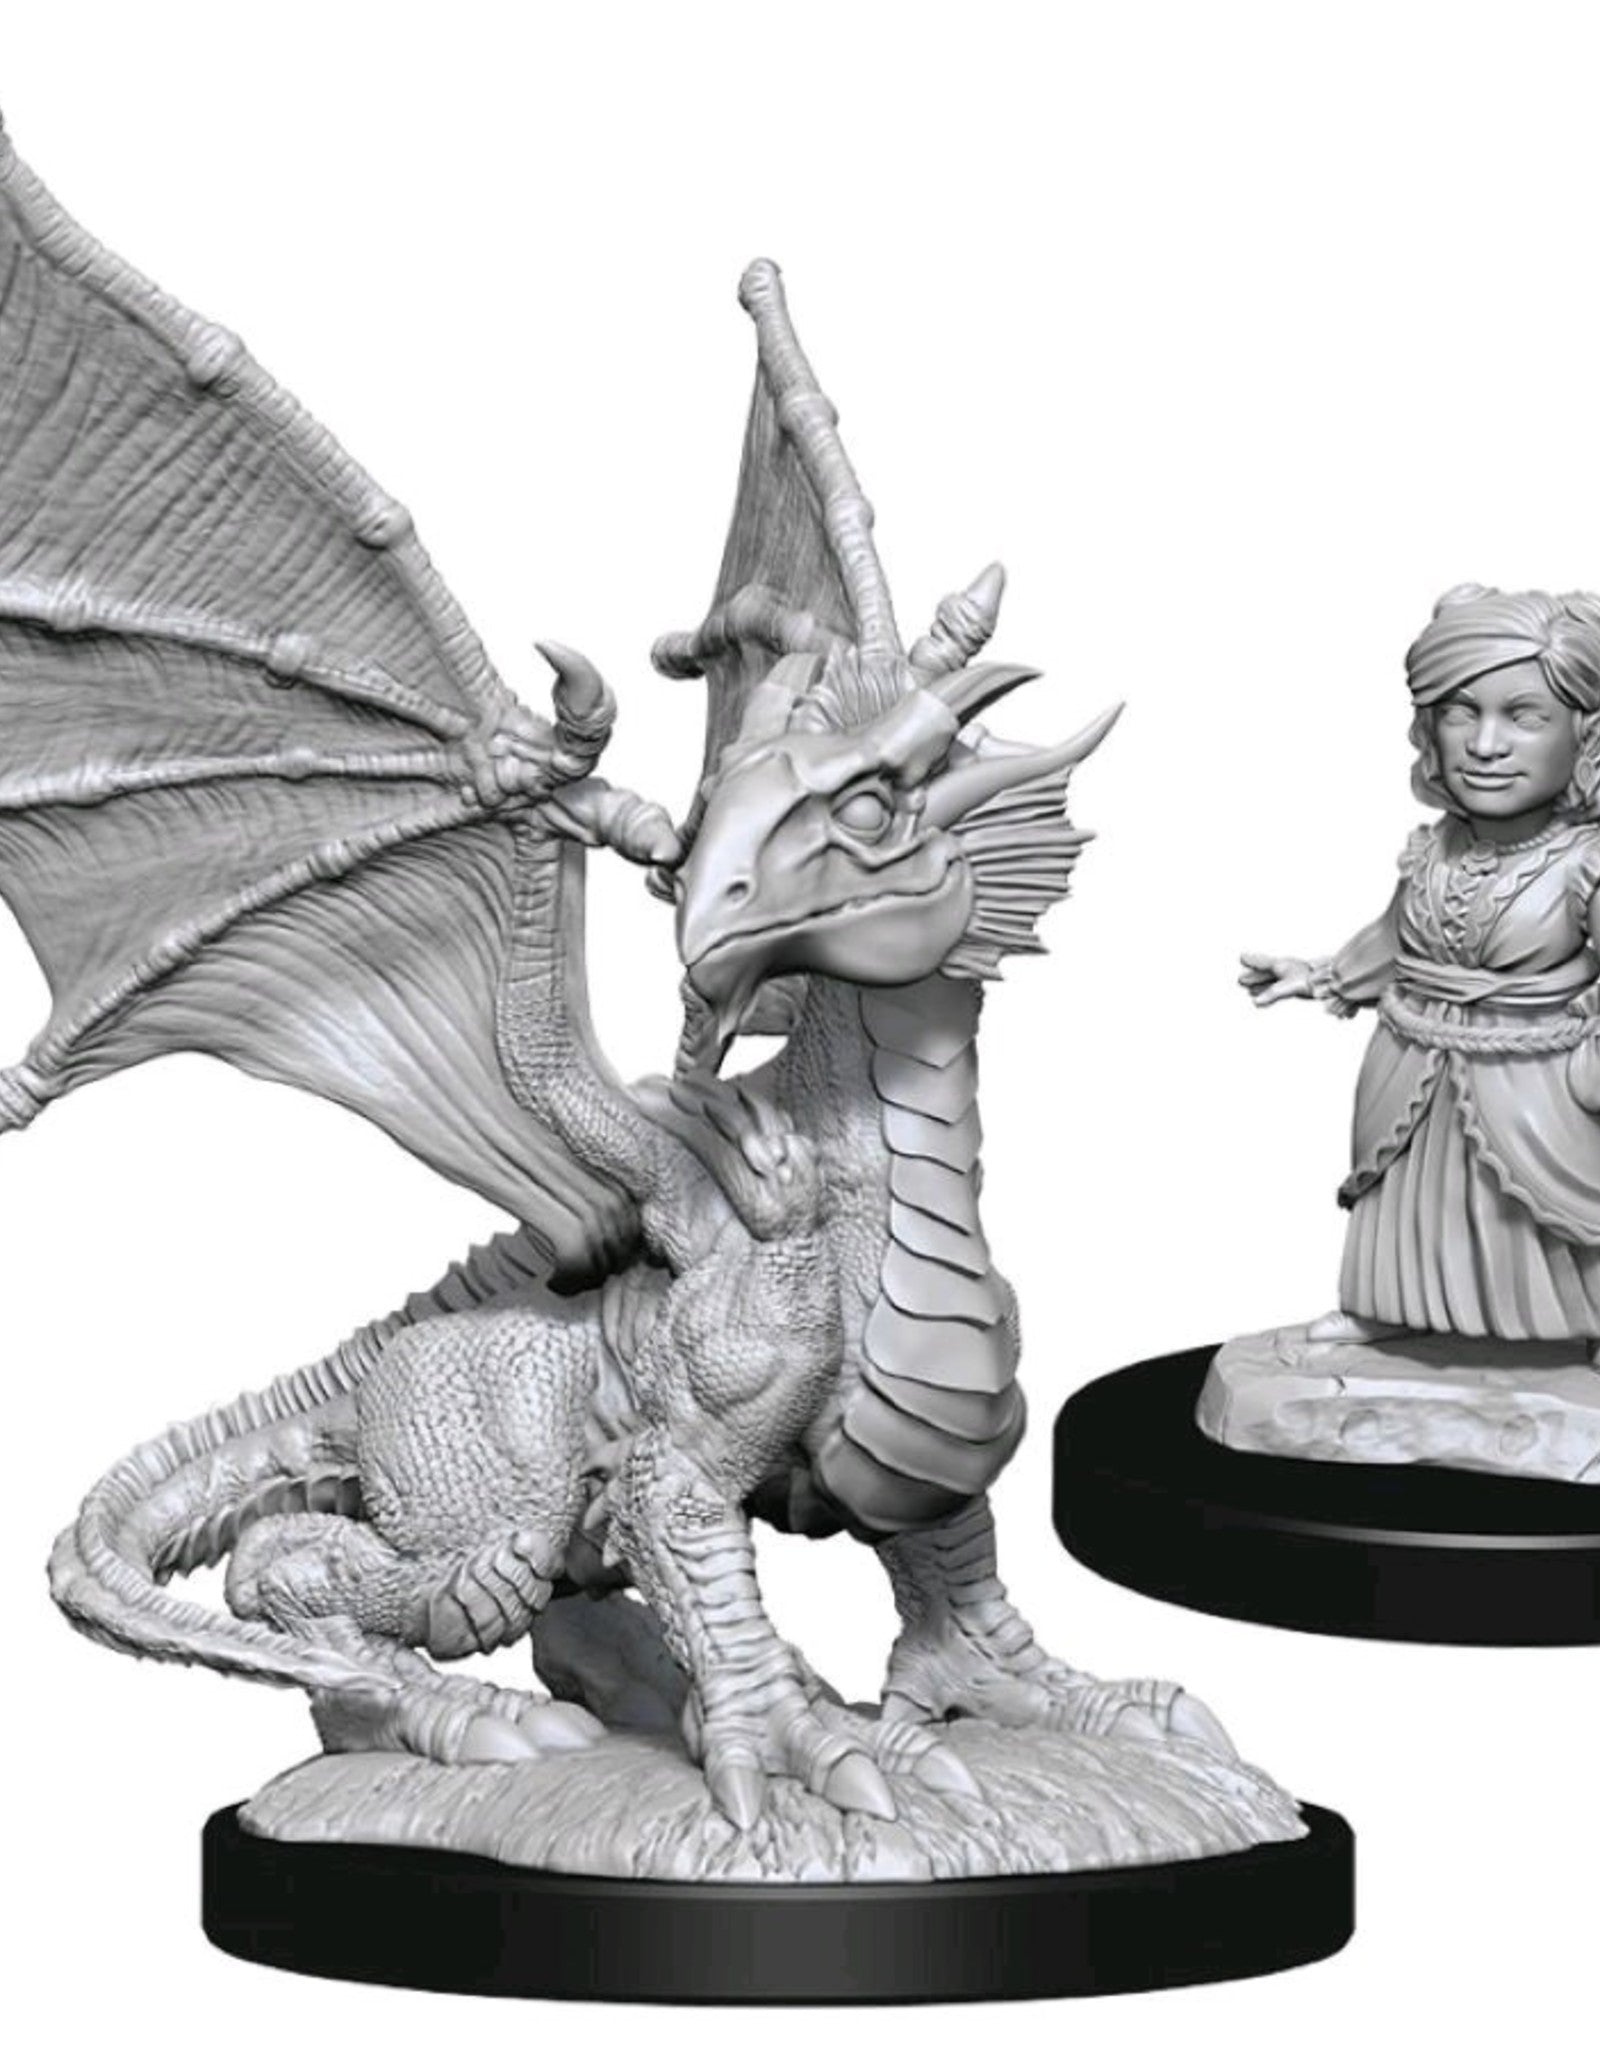 D&D Miniatures: Nolzur's Marvelous Miniatures: Silver Dragon Wyrmling & Dragon Friend